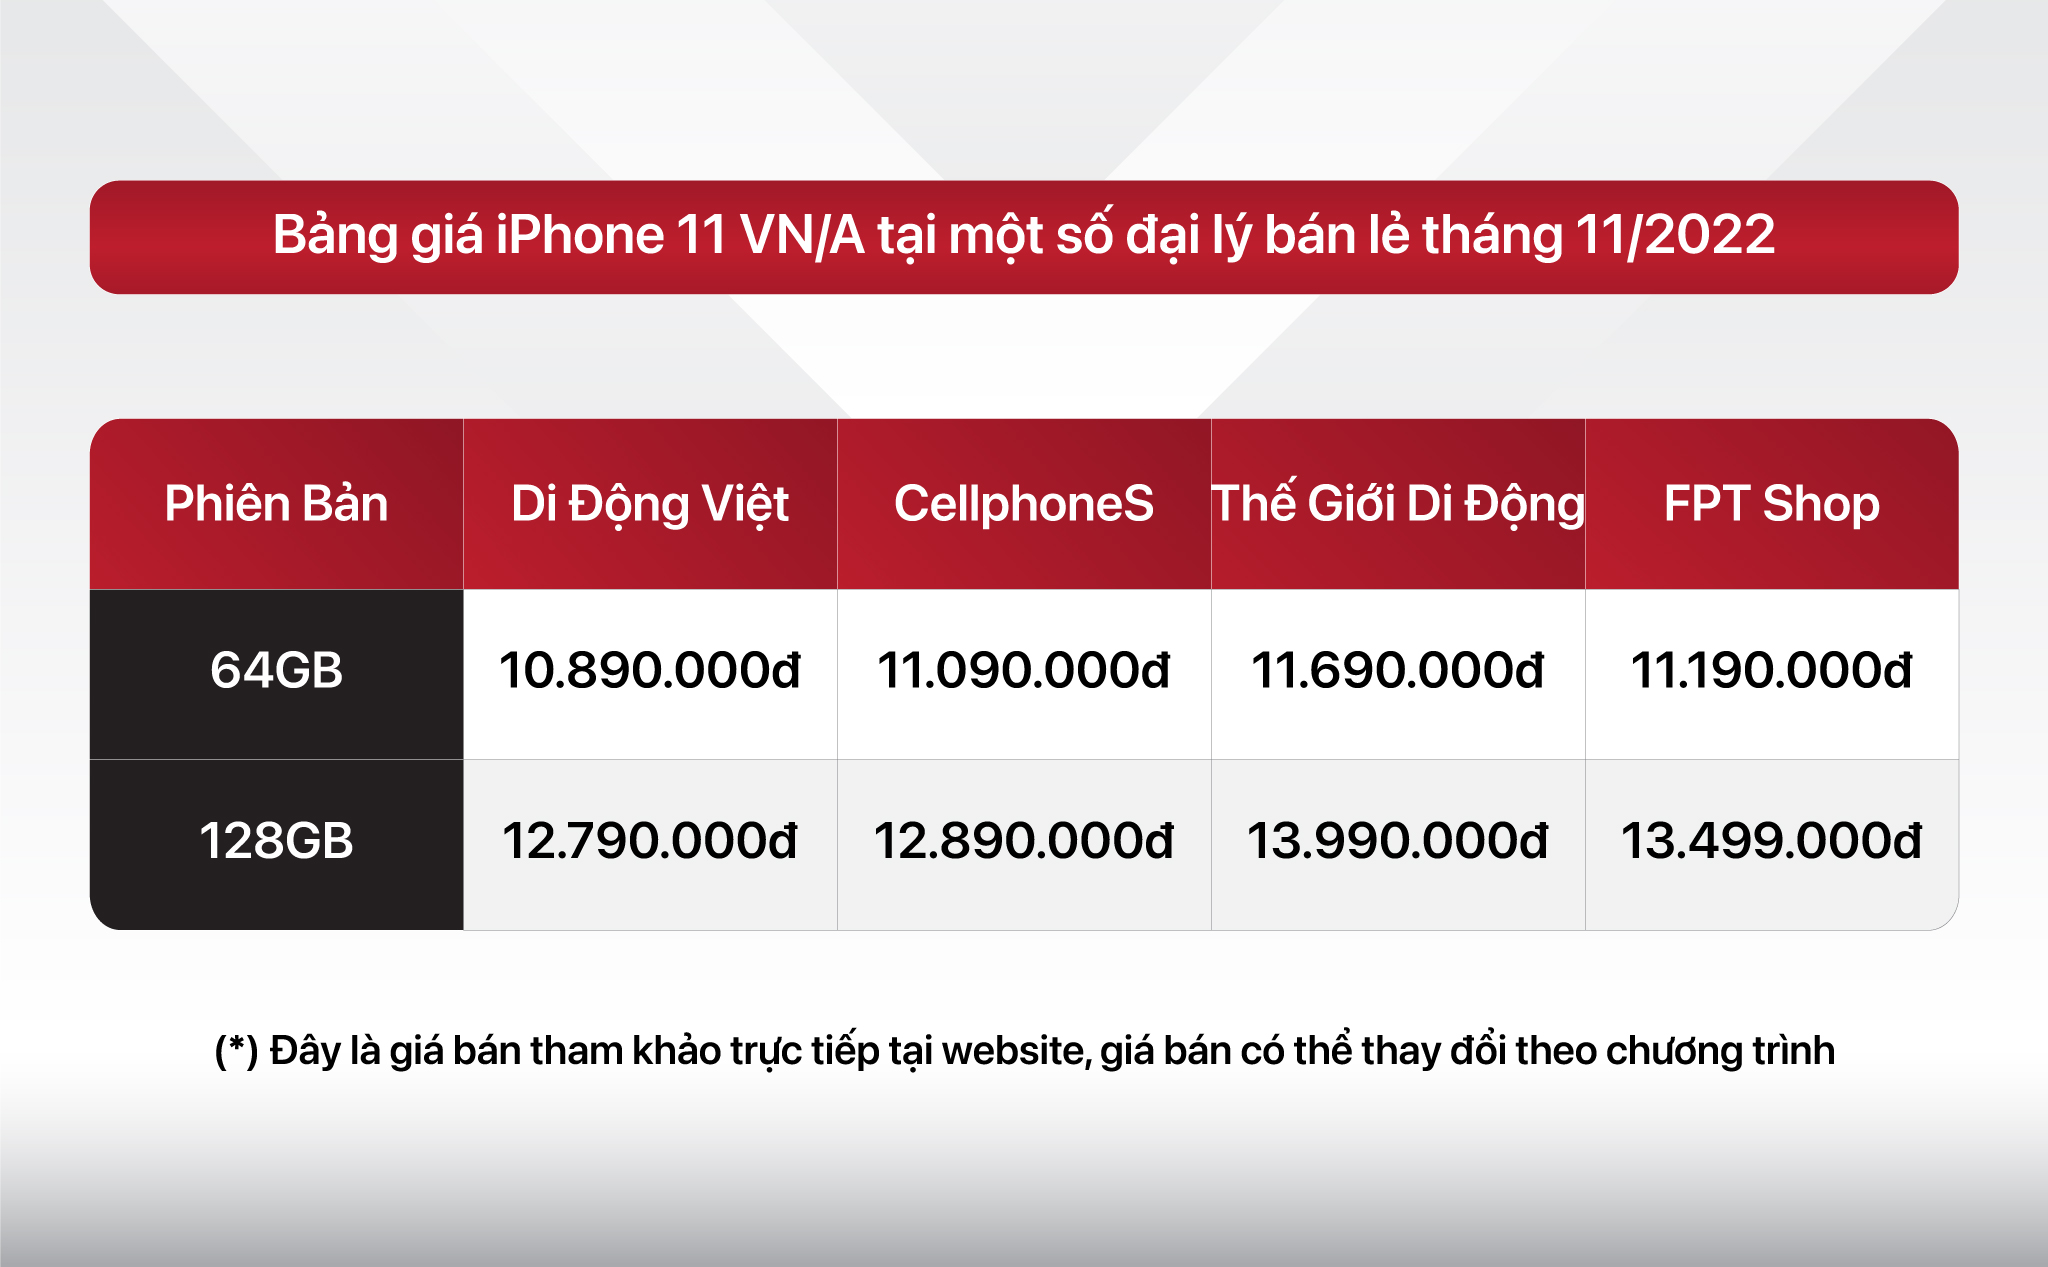 iPhone 11 VN/A giá thấp kỷ lục, vẫn bán chạy sau hơn 3 năm ra mắt